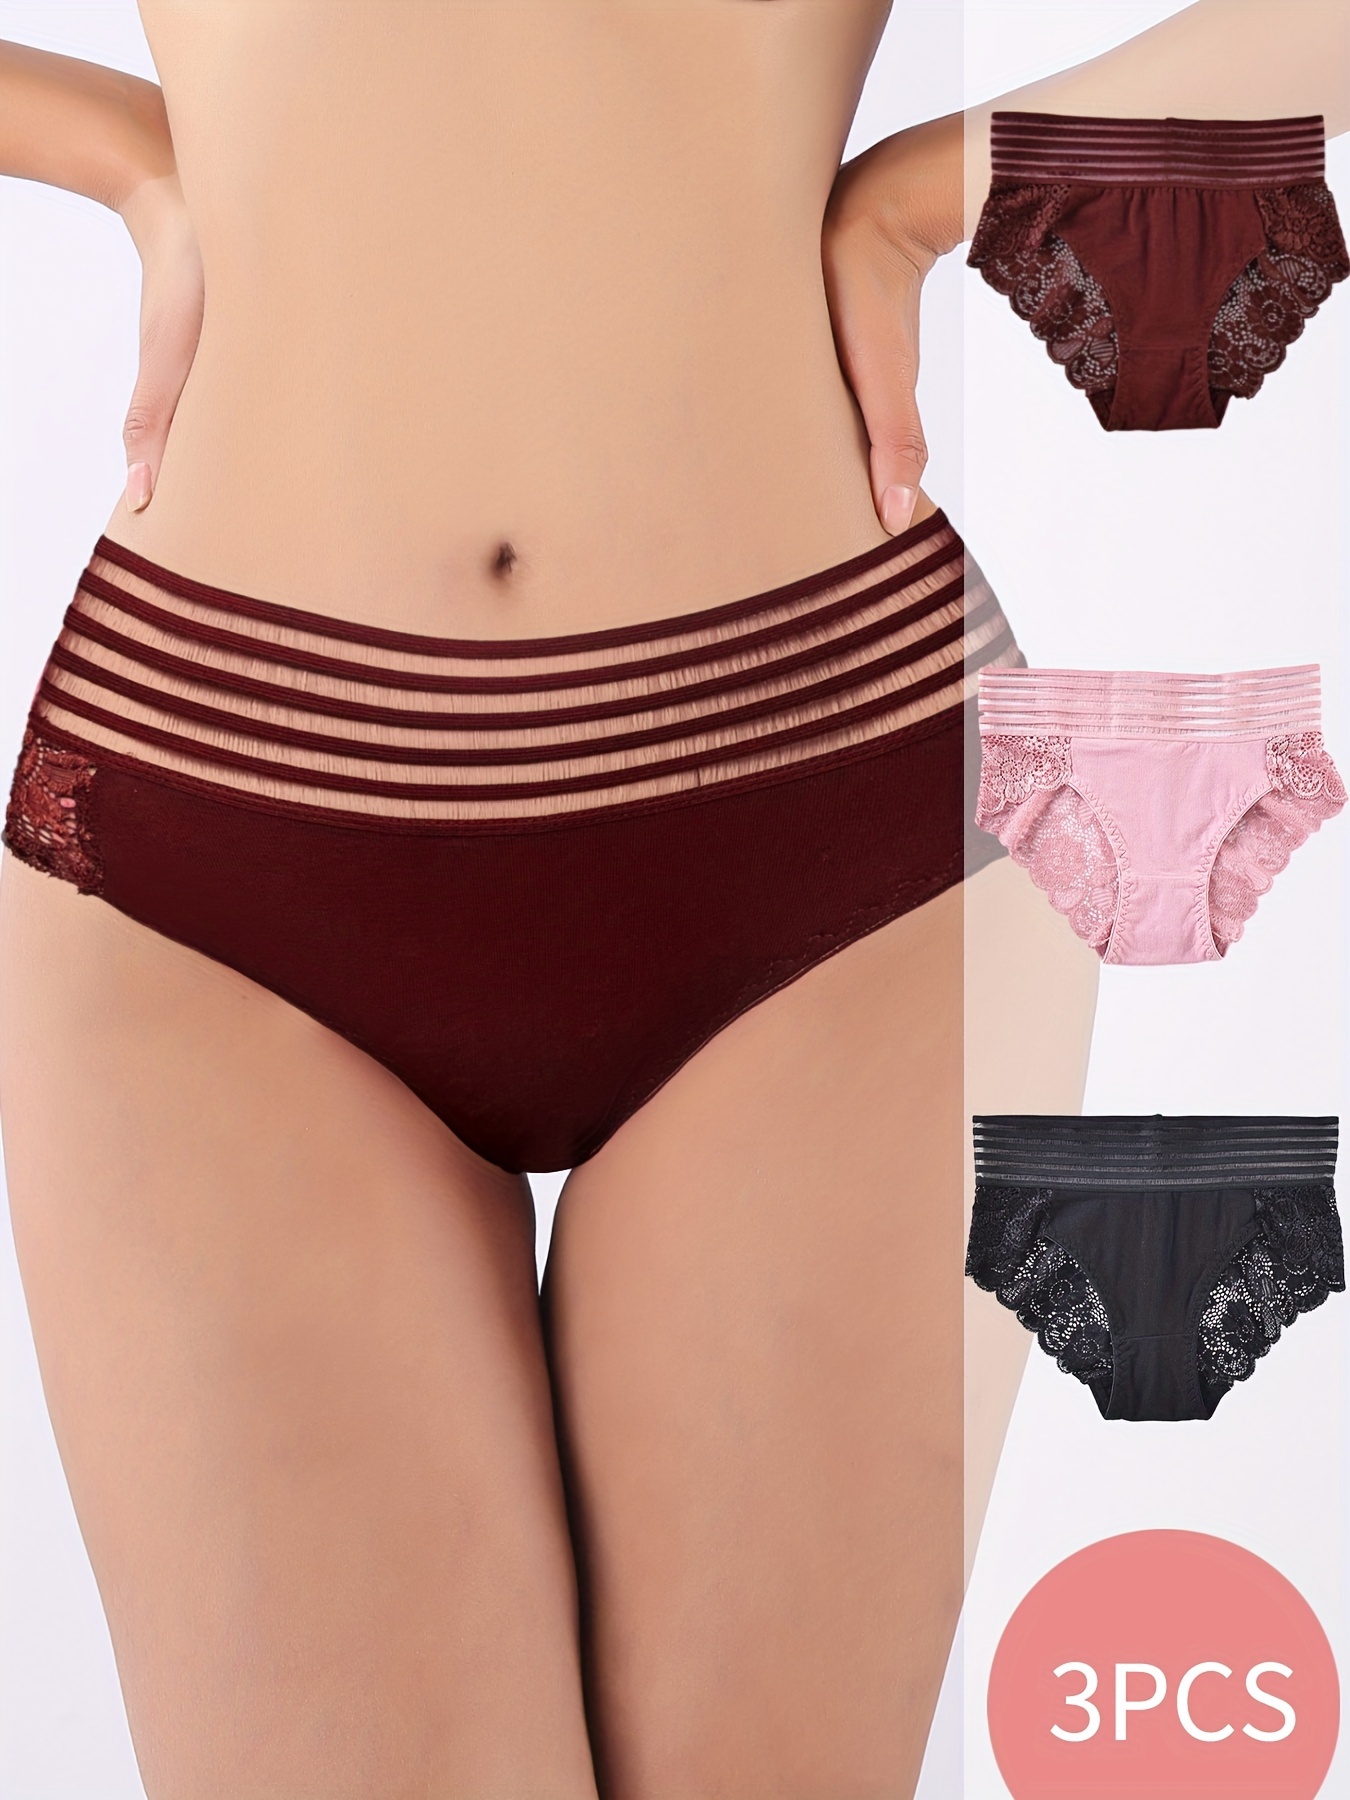 Women's Lingerie Underwear Knickers Briefs Women Cotton French Cut